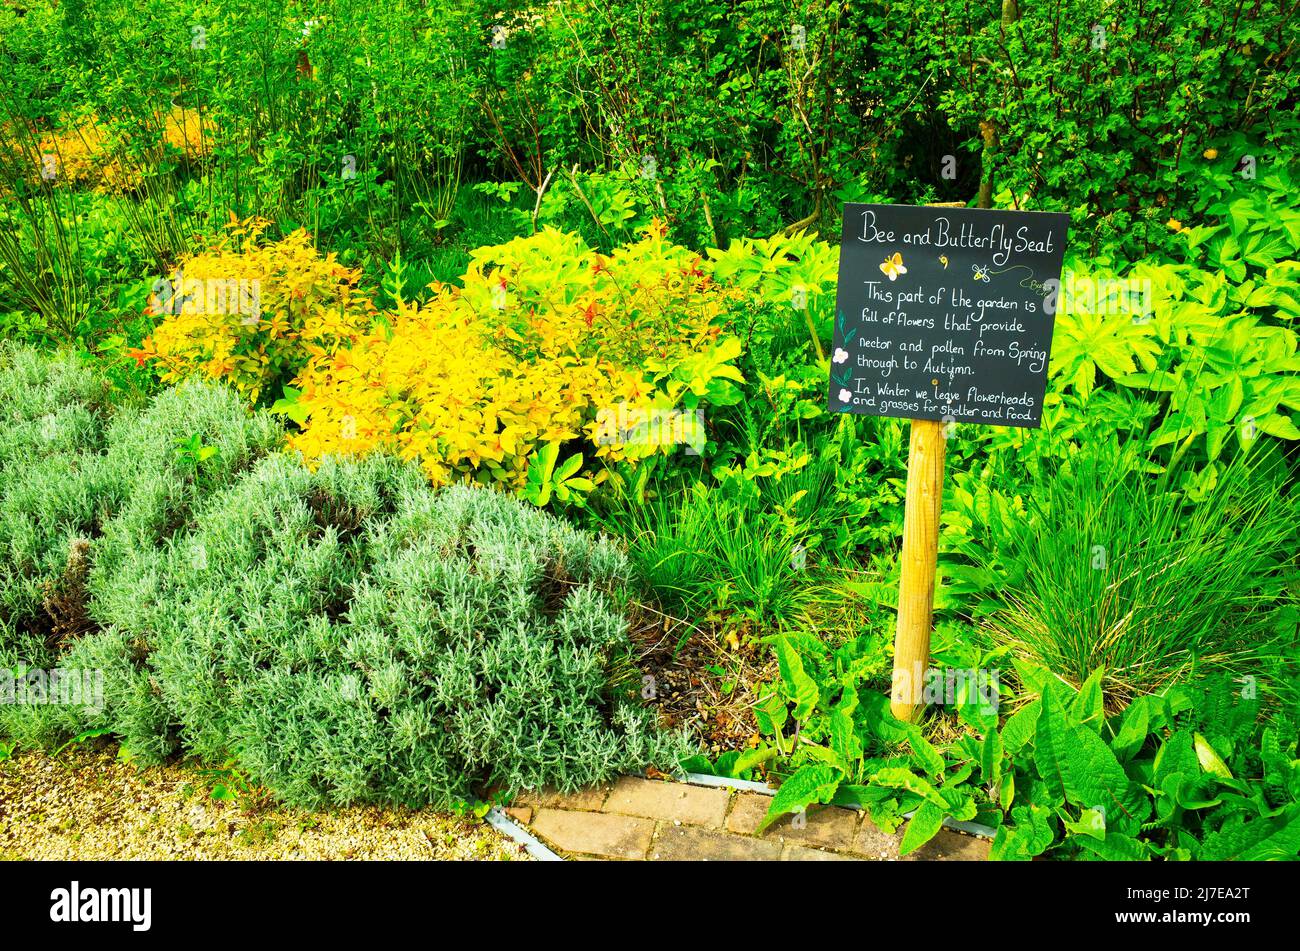 Dans le jardin clos de Kirkleatham, une exposition de fleurs destinées à attirer les papillons et les abeilles du printemps à l'automne Banque D'Images